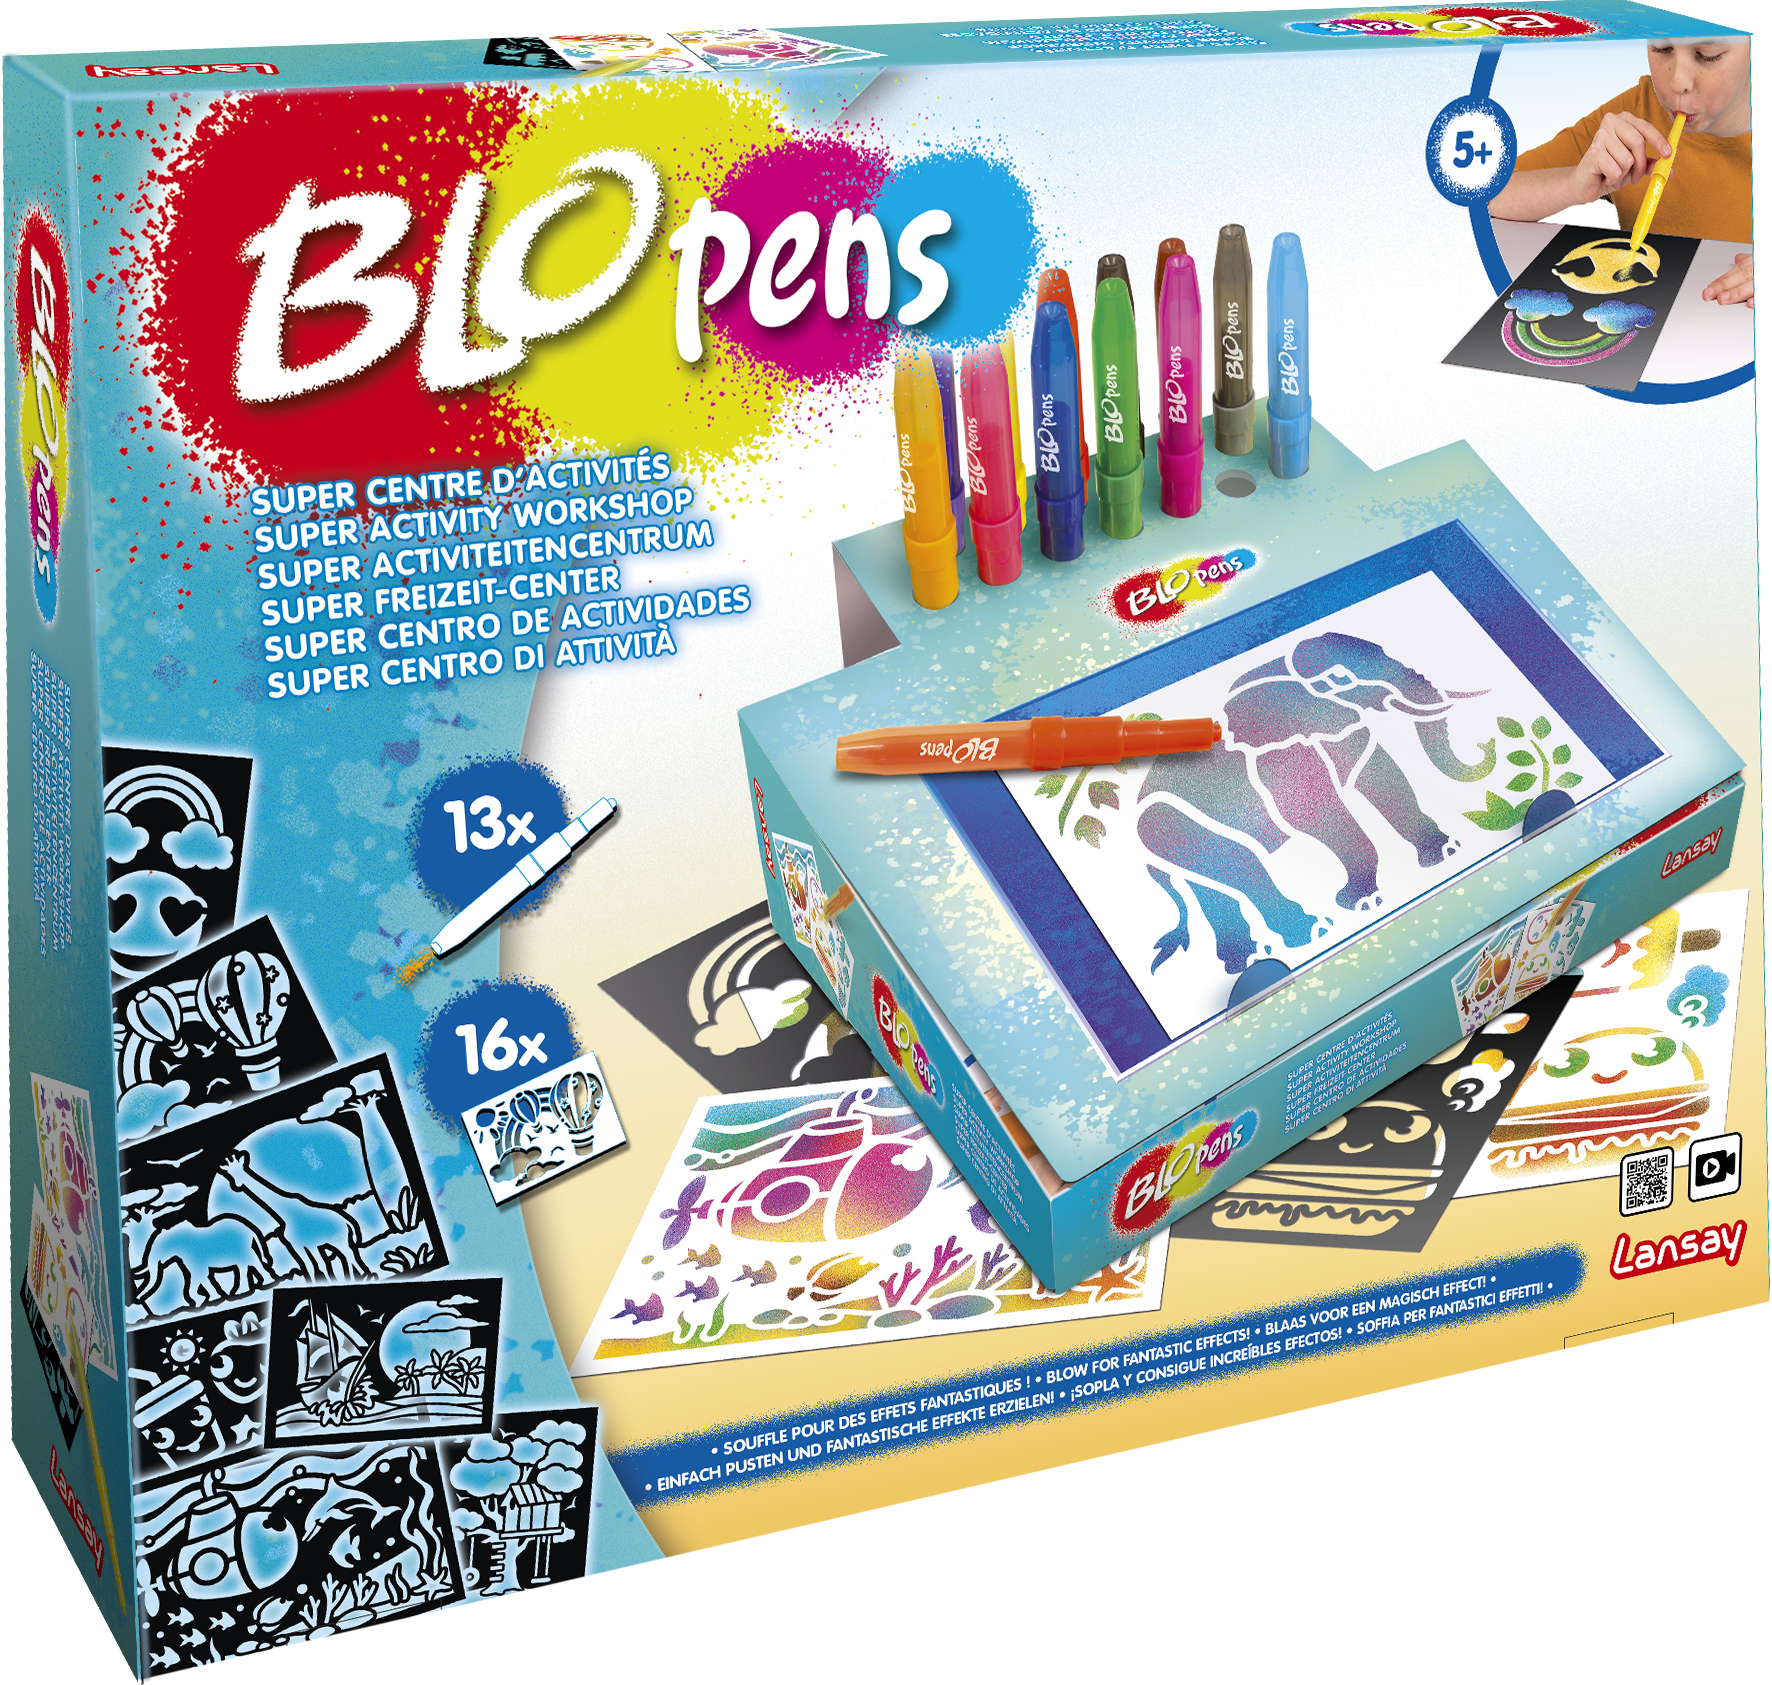 Le coloriage est un jeu d'enfant avec Blopens #concours